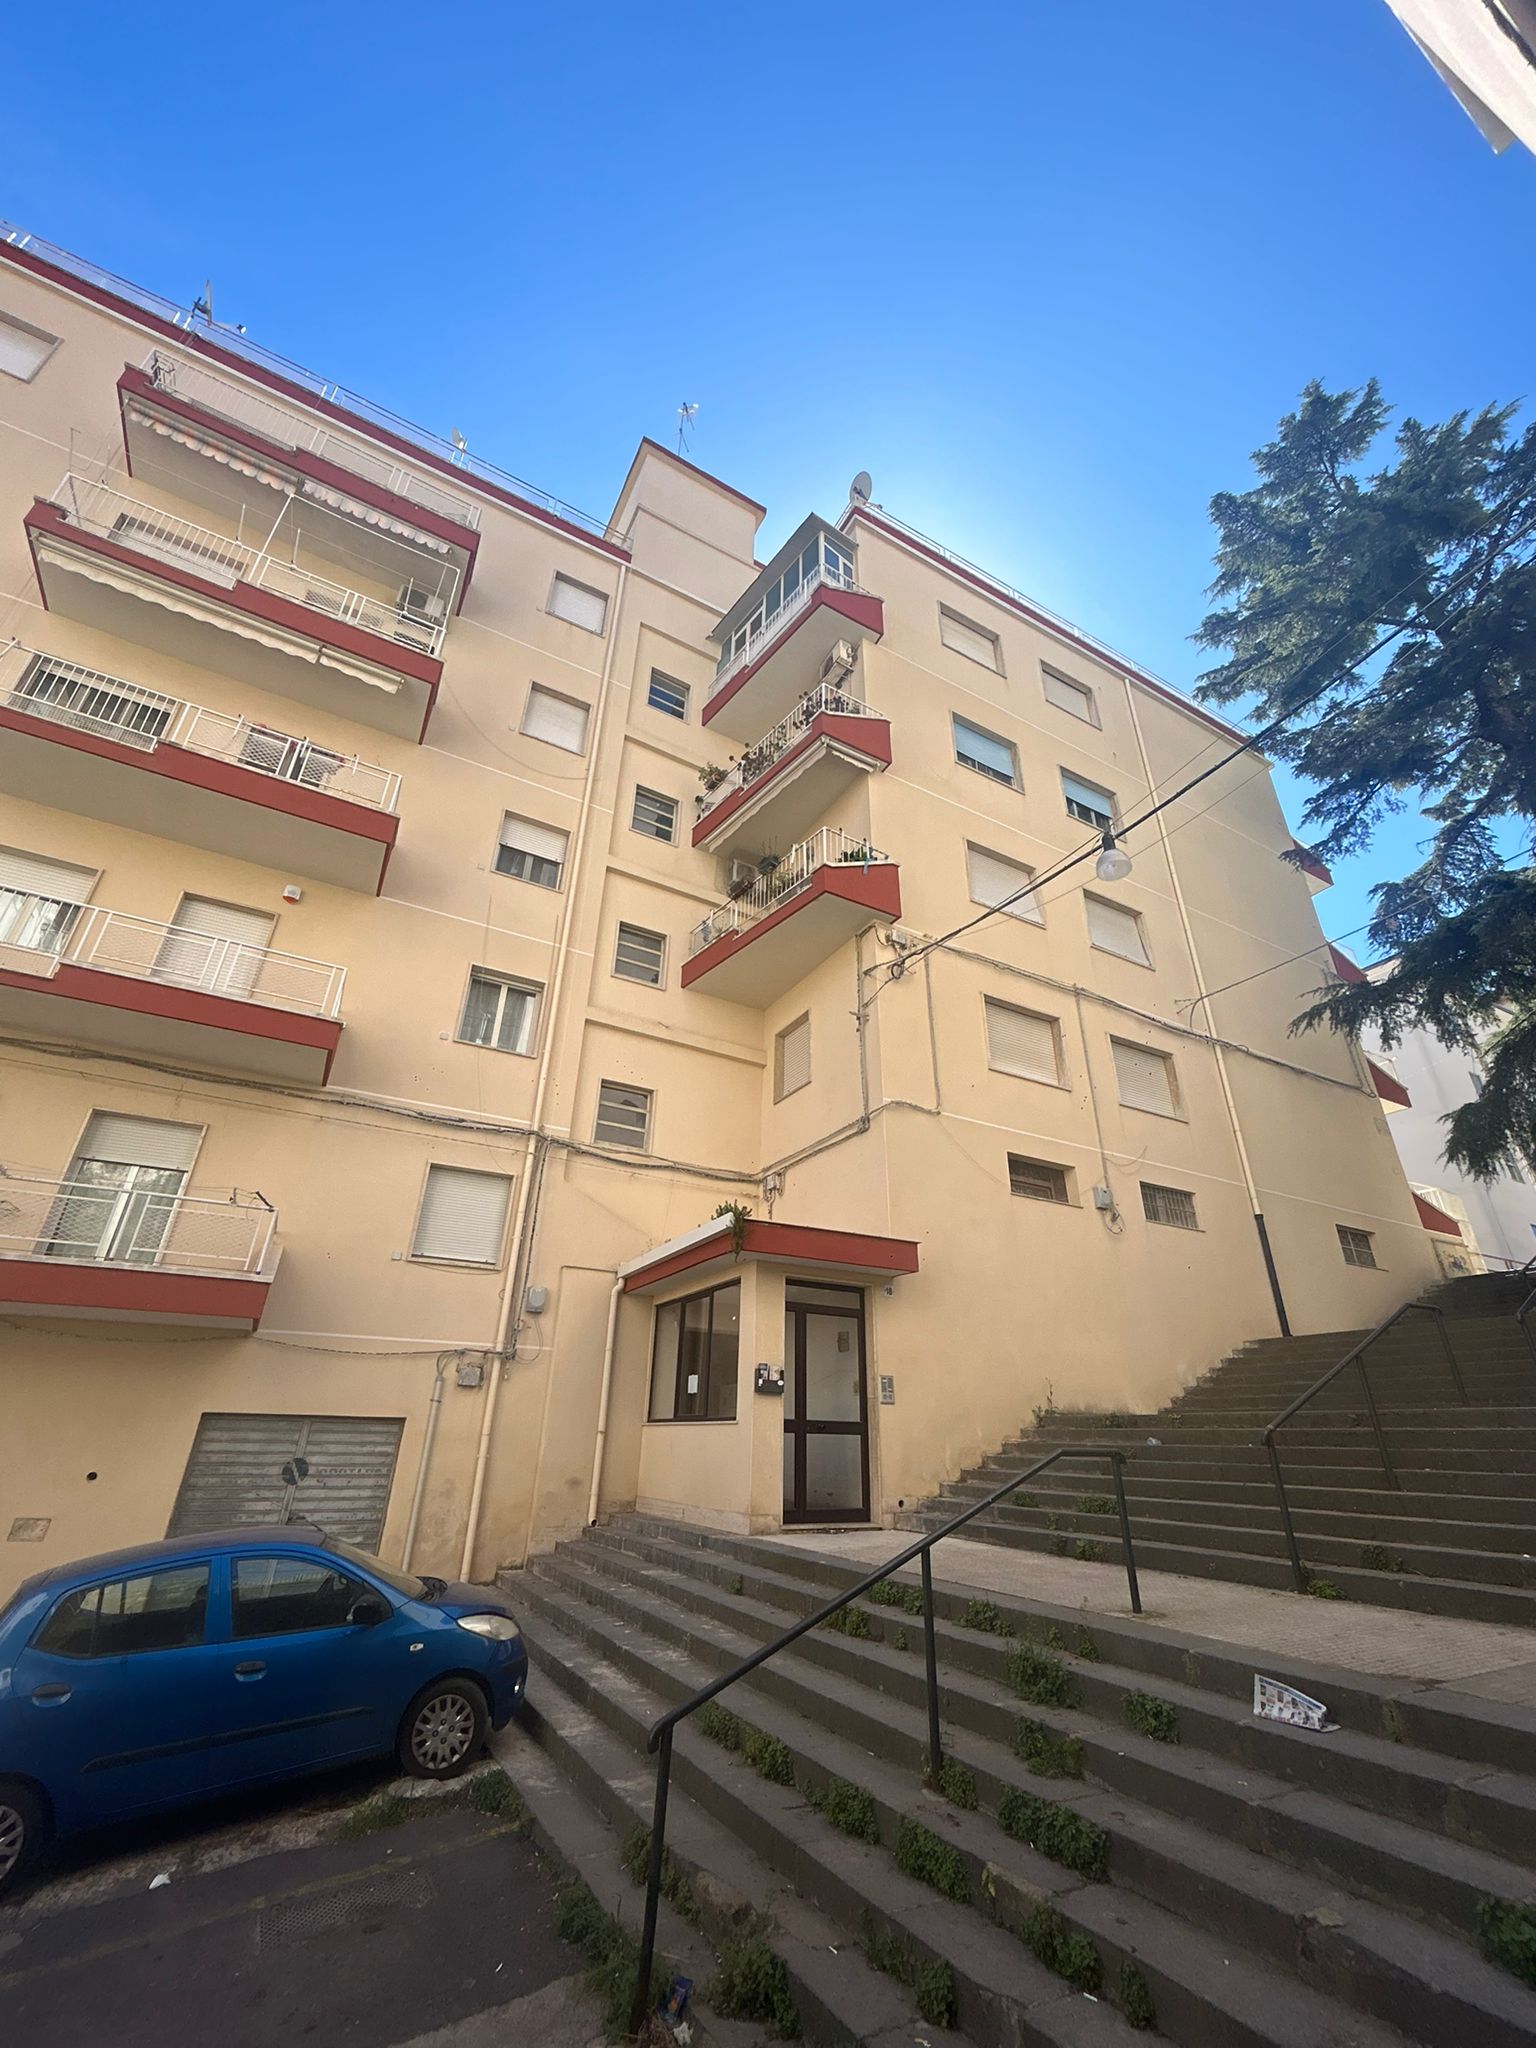 Stanze in appartamento Via Corsica Caltanissetta